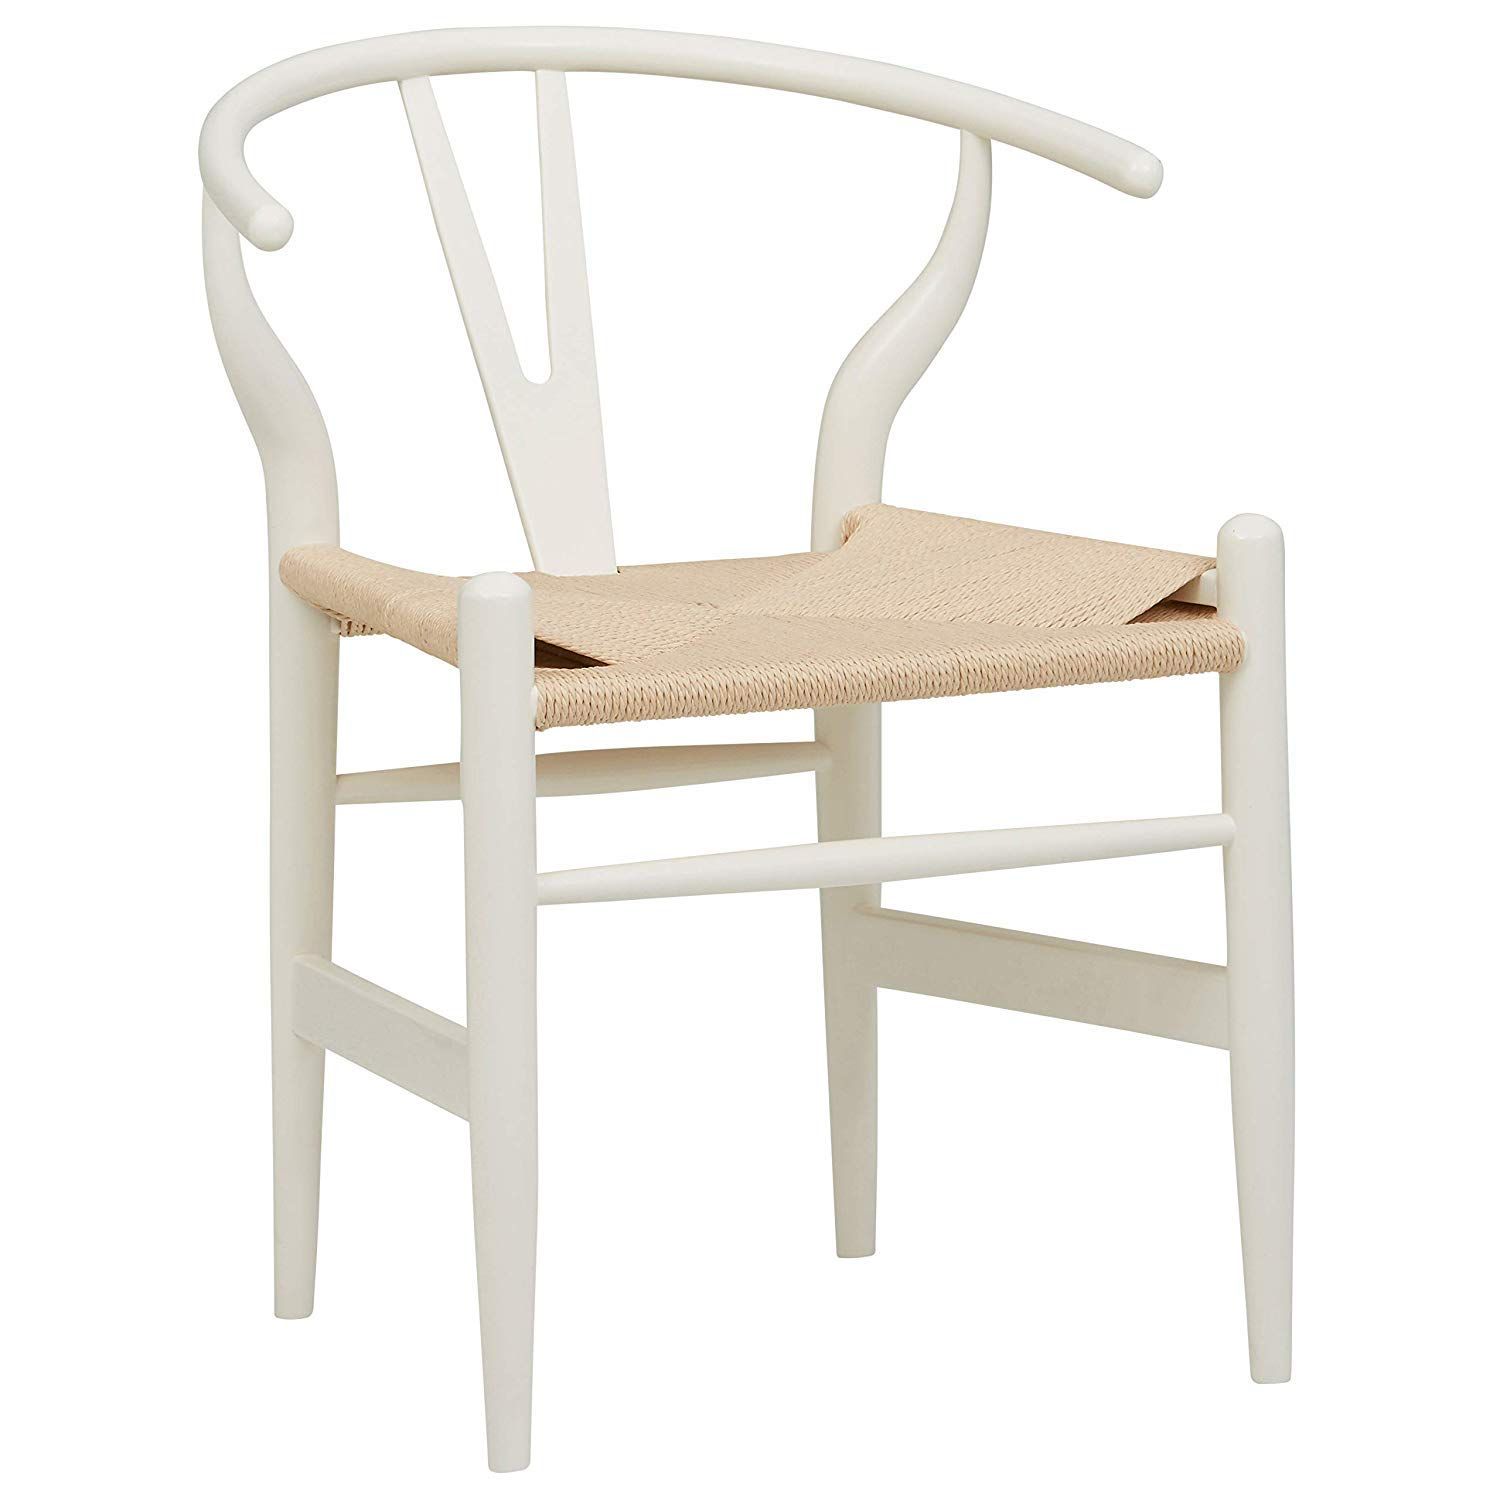 Amazon Brand - Stone & Beam Classic Wishbone Dining Chair, 22.4"W, White / Natural | Amazon (US)